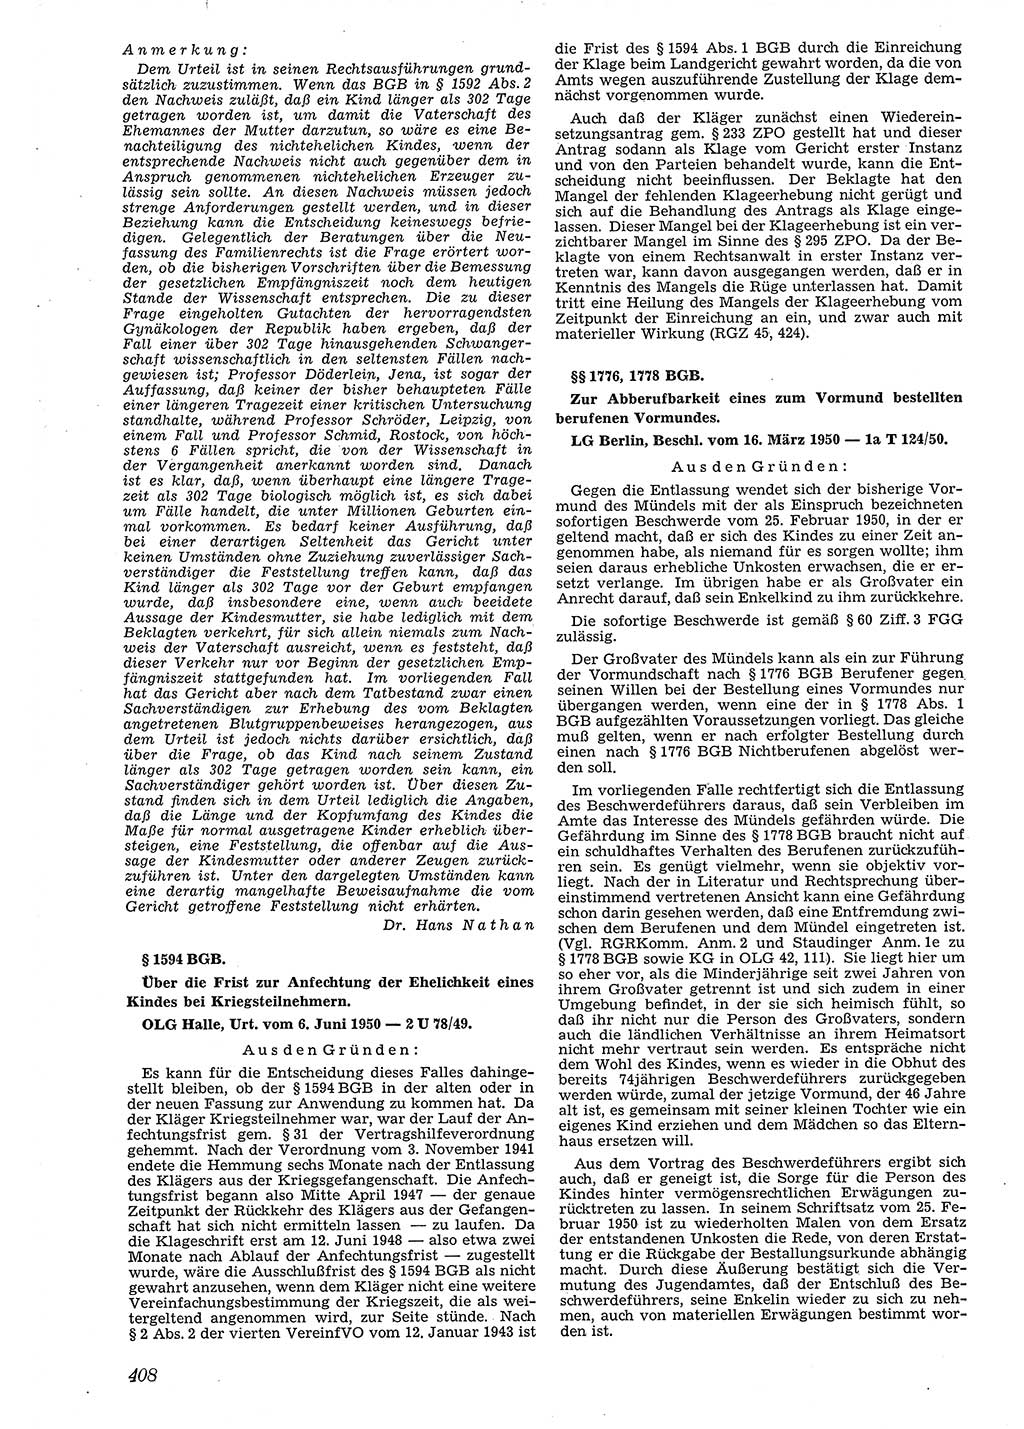 Neue Justiz (NJ), Zeitschrift für Recht und Rechtswissenschaft [Deutsche Demokratische Republik (DDR)], 4. Jahrgang 1950, Seite 408 (NJ DDR 1950, S. 408)